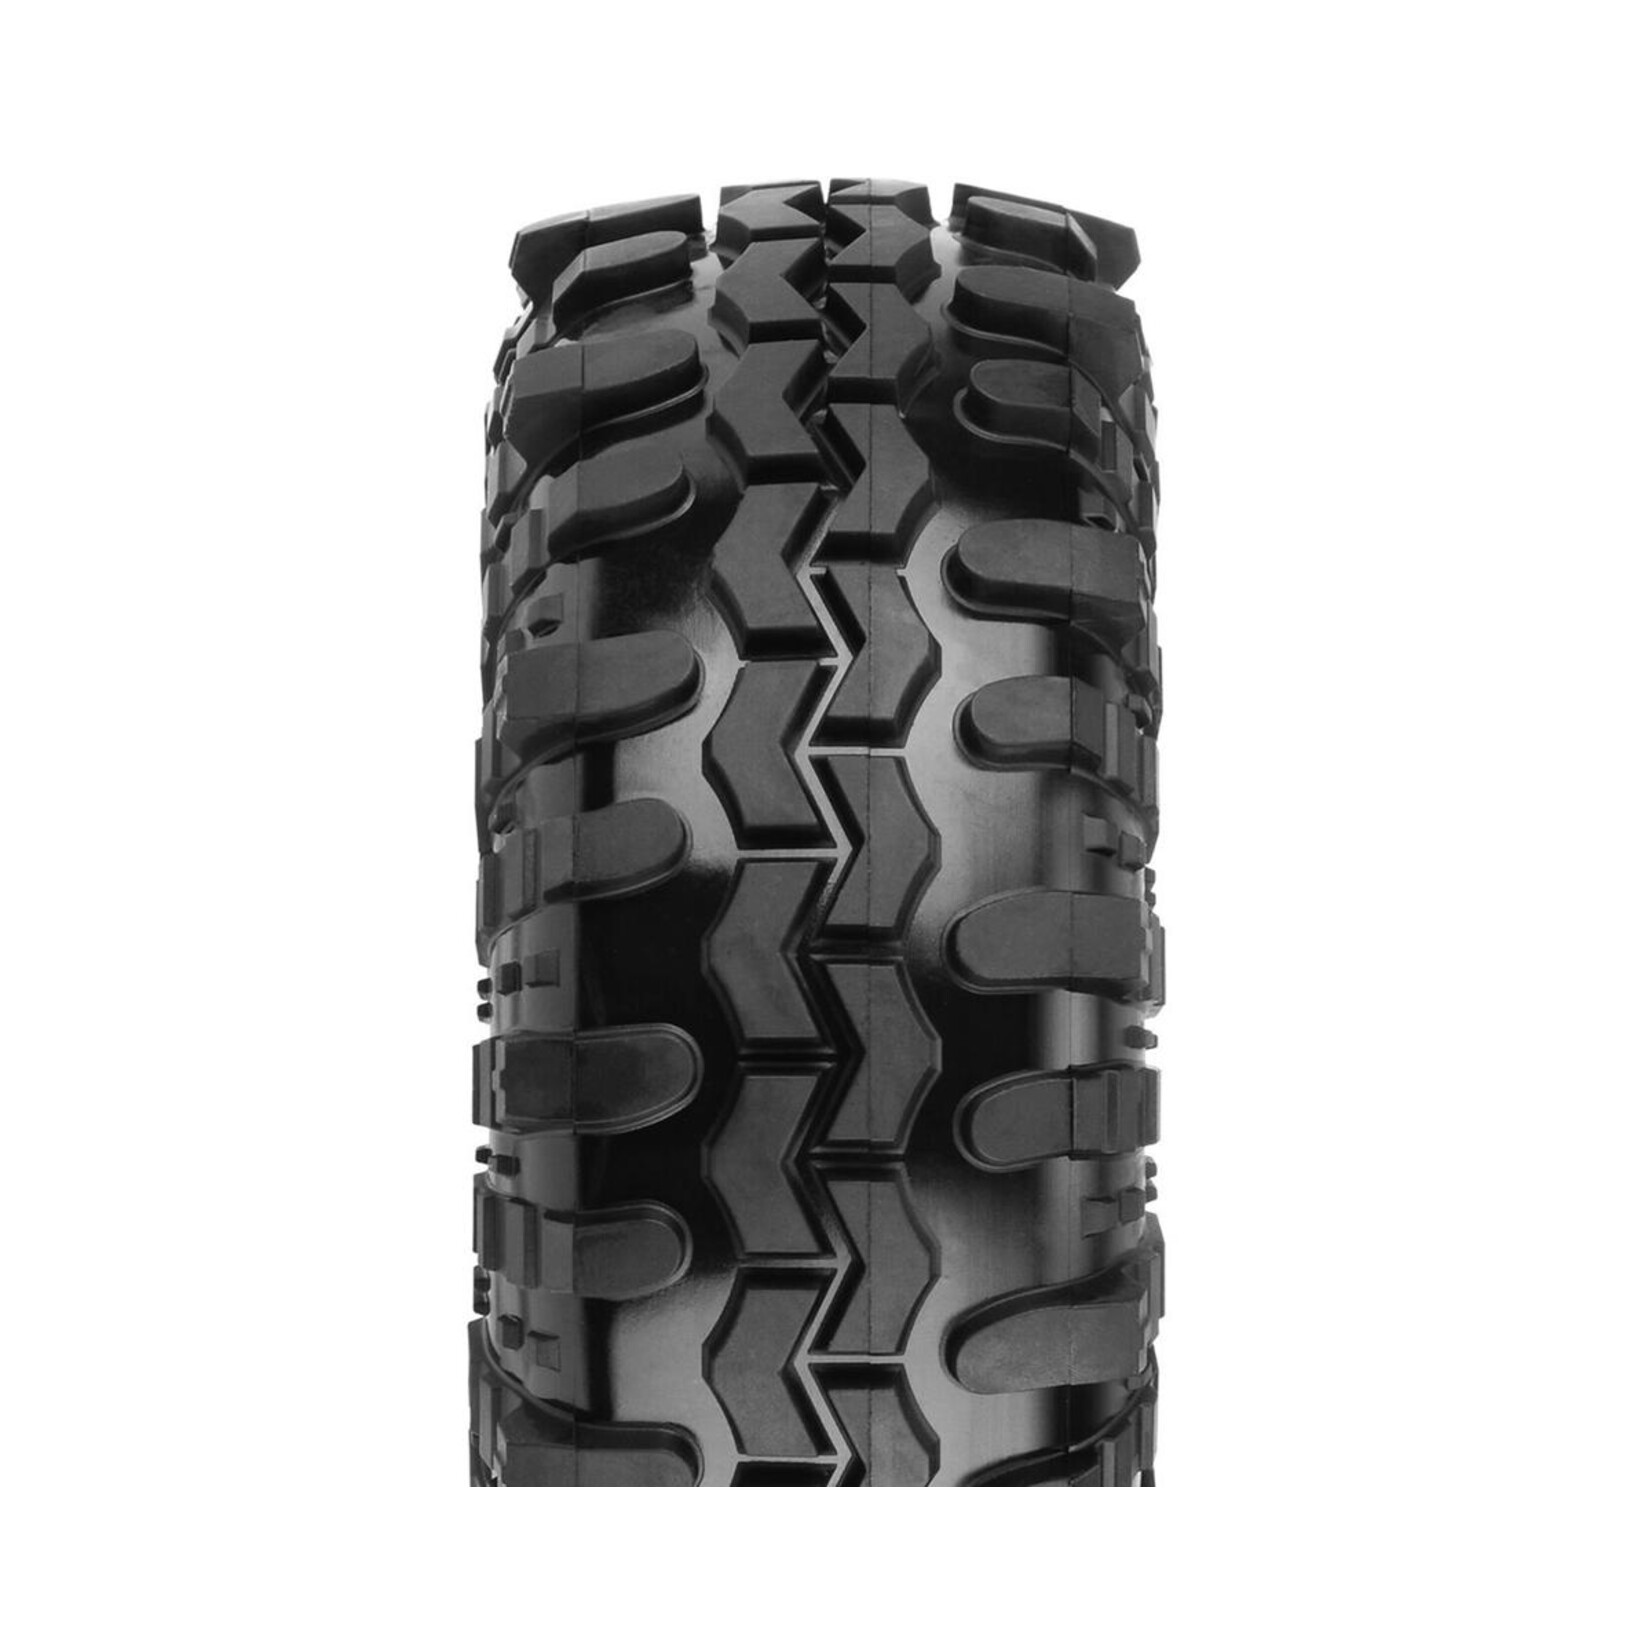 Pro-Line Pro-Line Interco Super Swamper TSL SXII 1.55" Scale Rock Crawler Tires (2) (G8) #10179-14